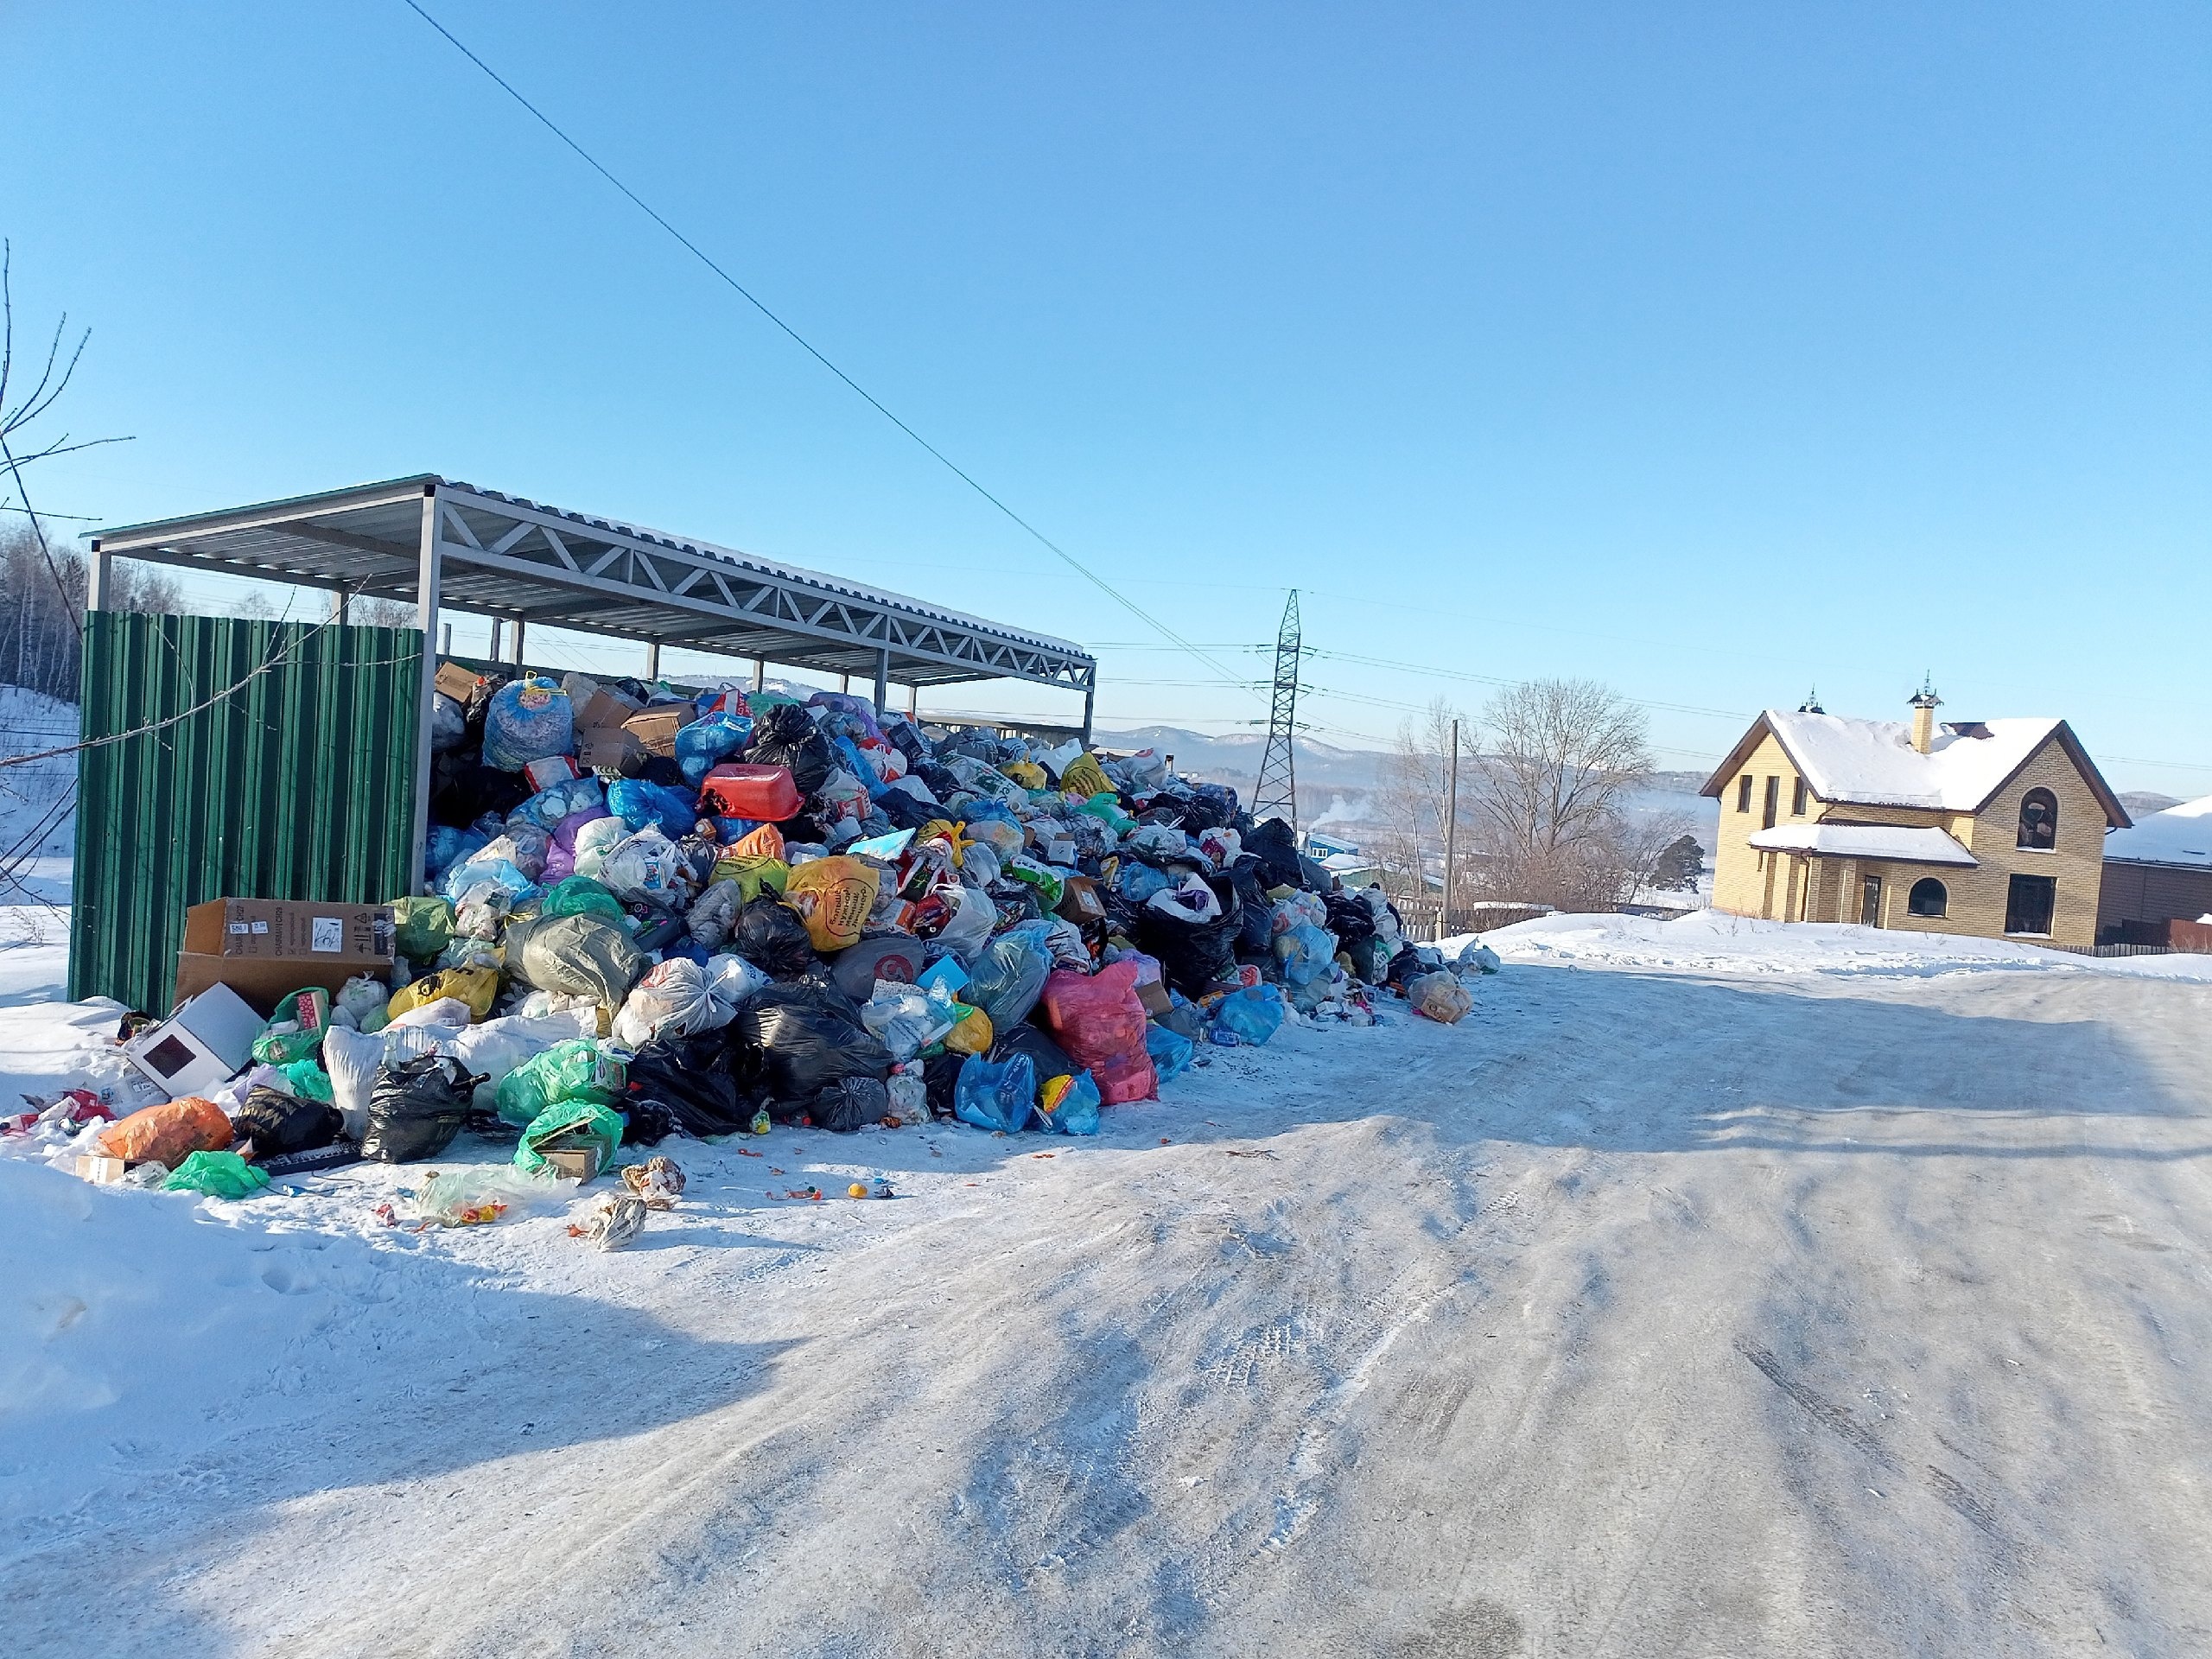 "Все виноваты": мэр Котова объяснила, что привело к мусорному кризису в Челябинске  